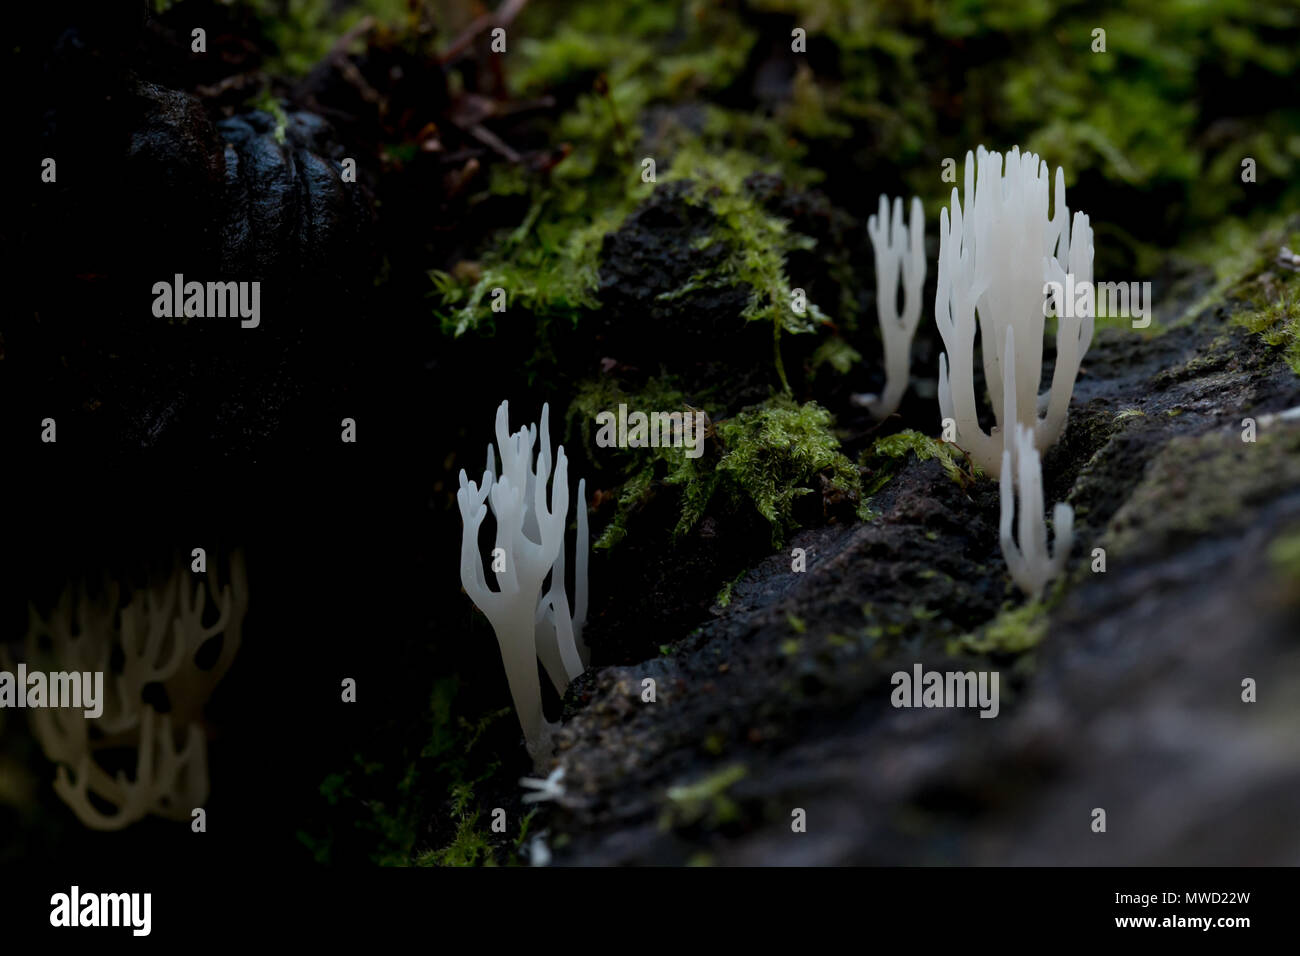 White coral fungi Stock Photo